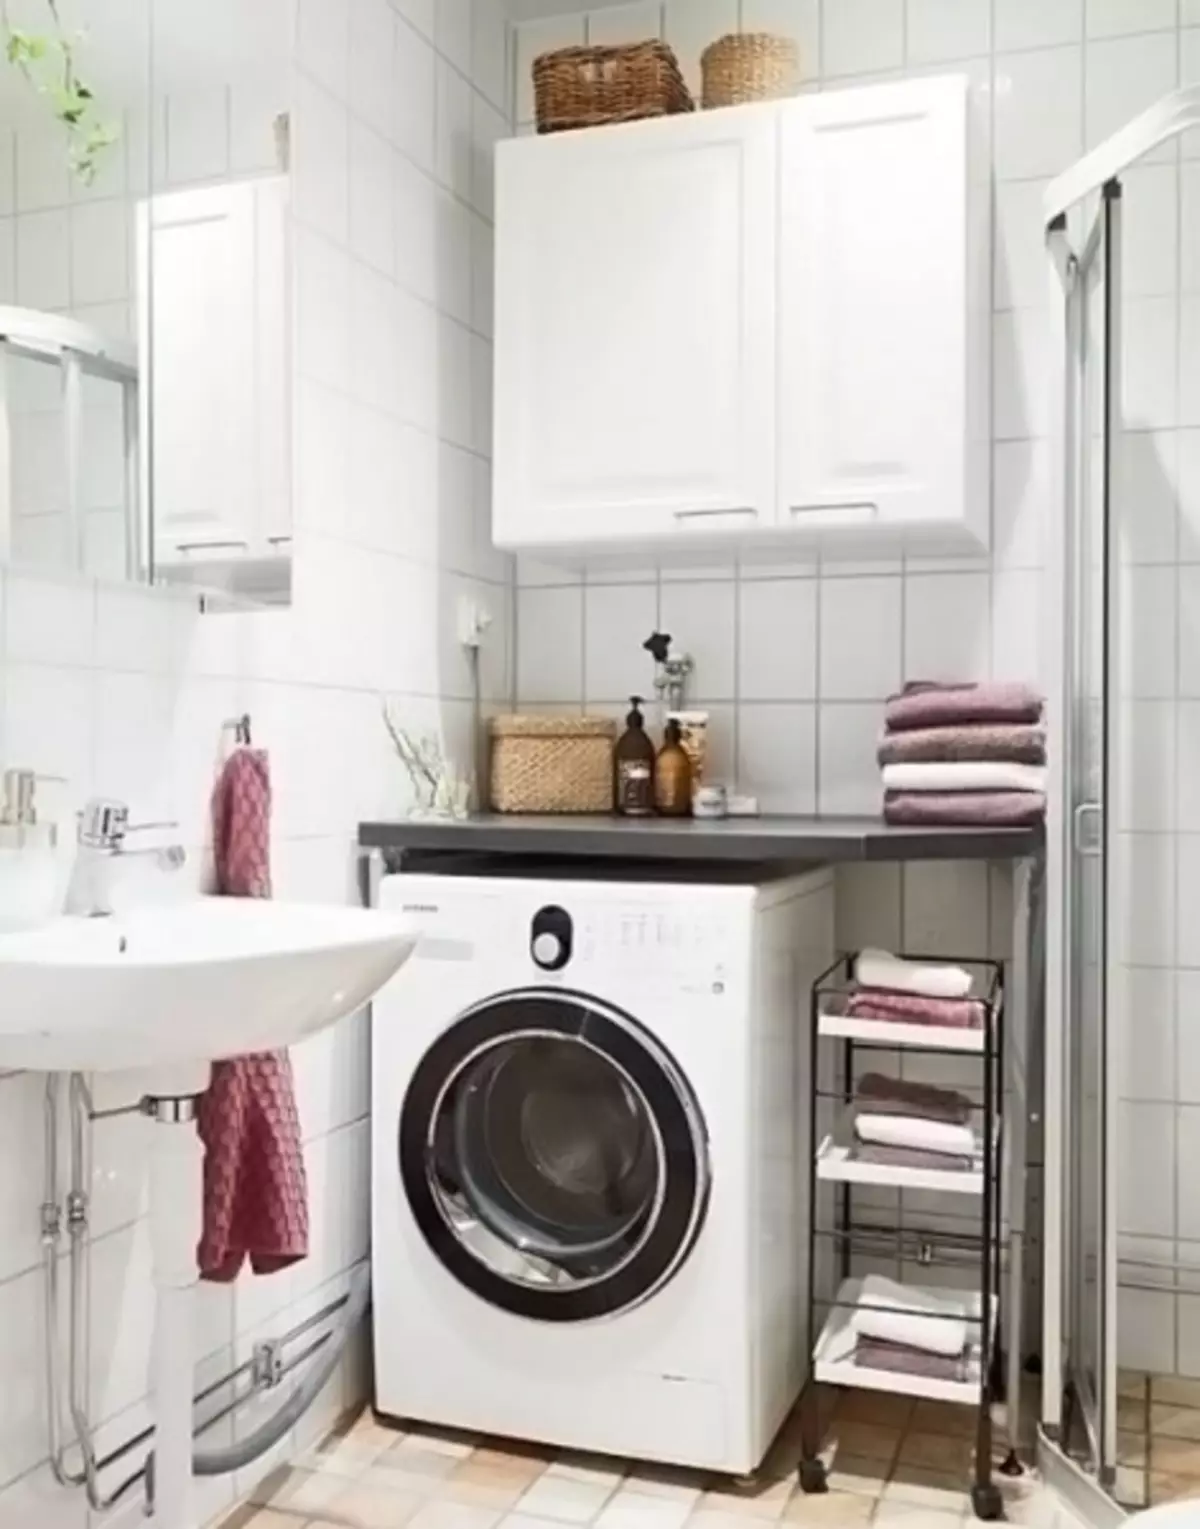 Installation av tvättmaskinen: Val av plats och funktioner i anslutningen